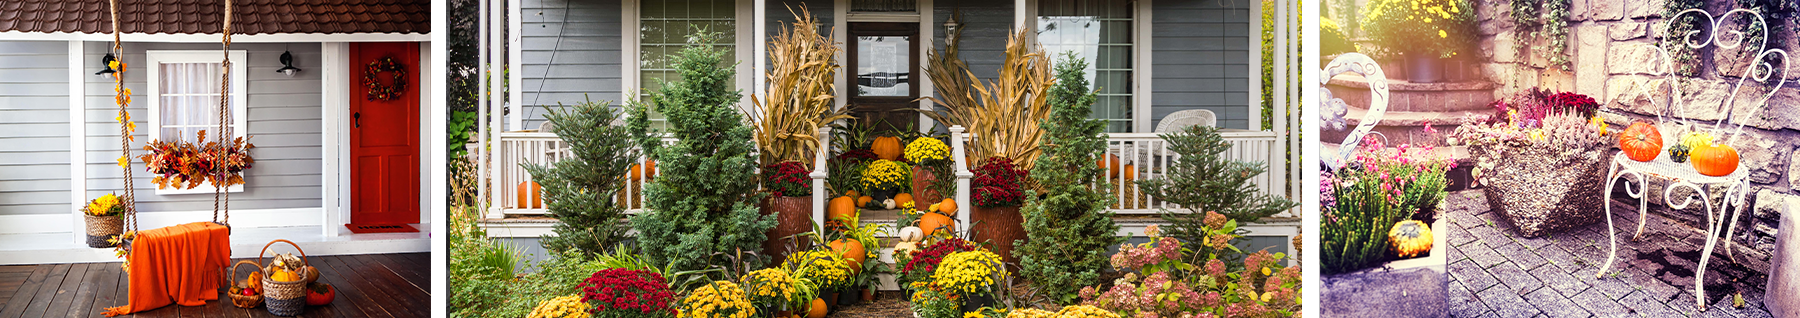 porche pour halloween avec couronne, seuil avec fleurs automnales et jardin avec citrouille banc